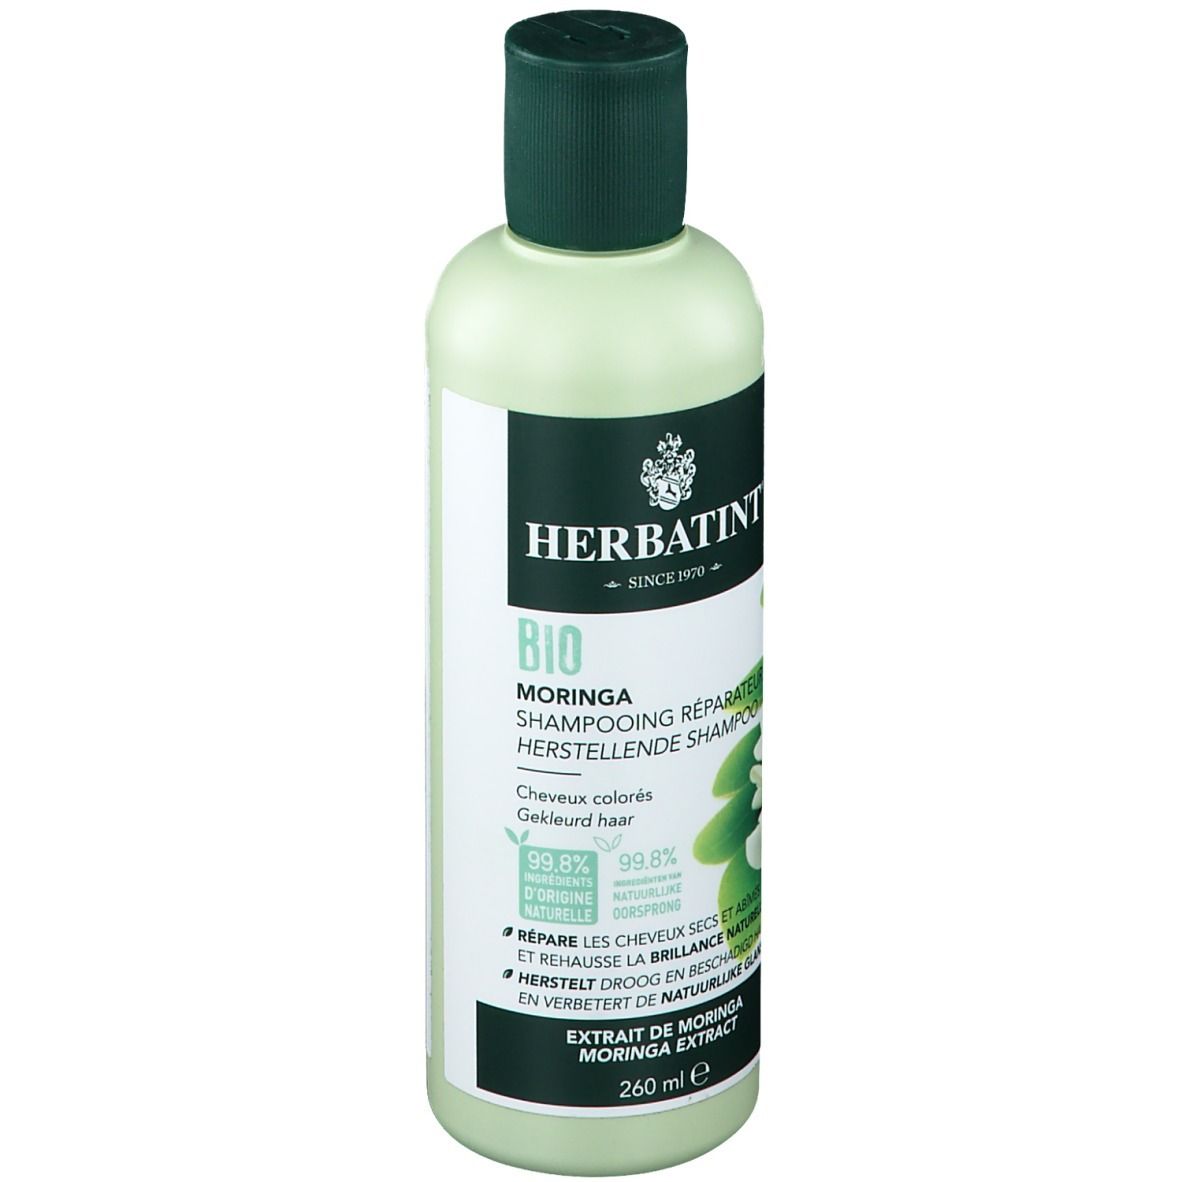 Herbatint Moringa Shampooing Réparateur